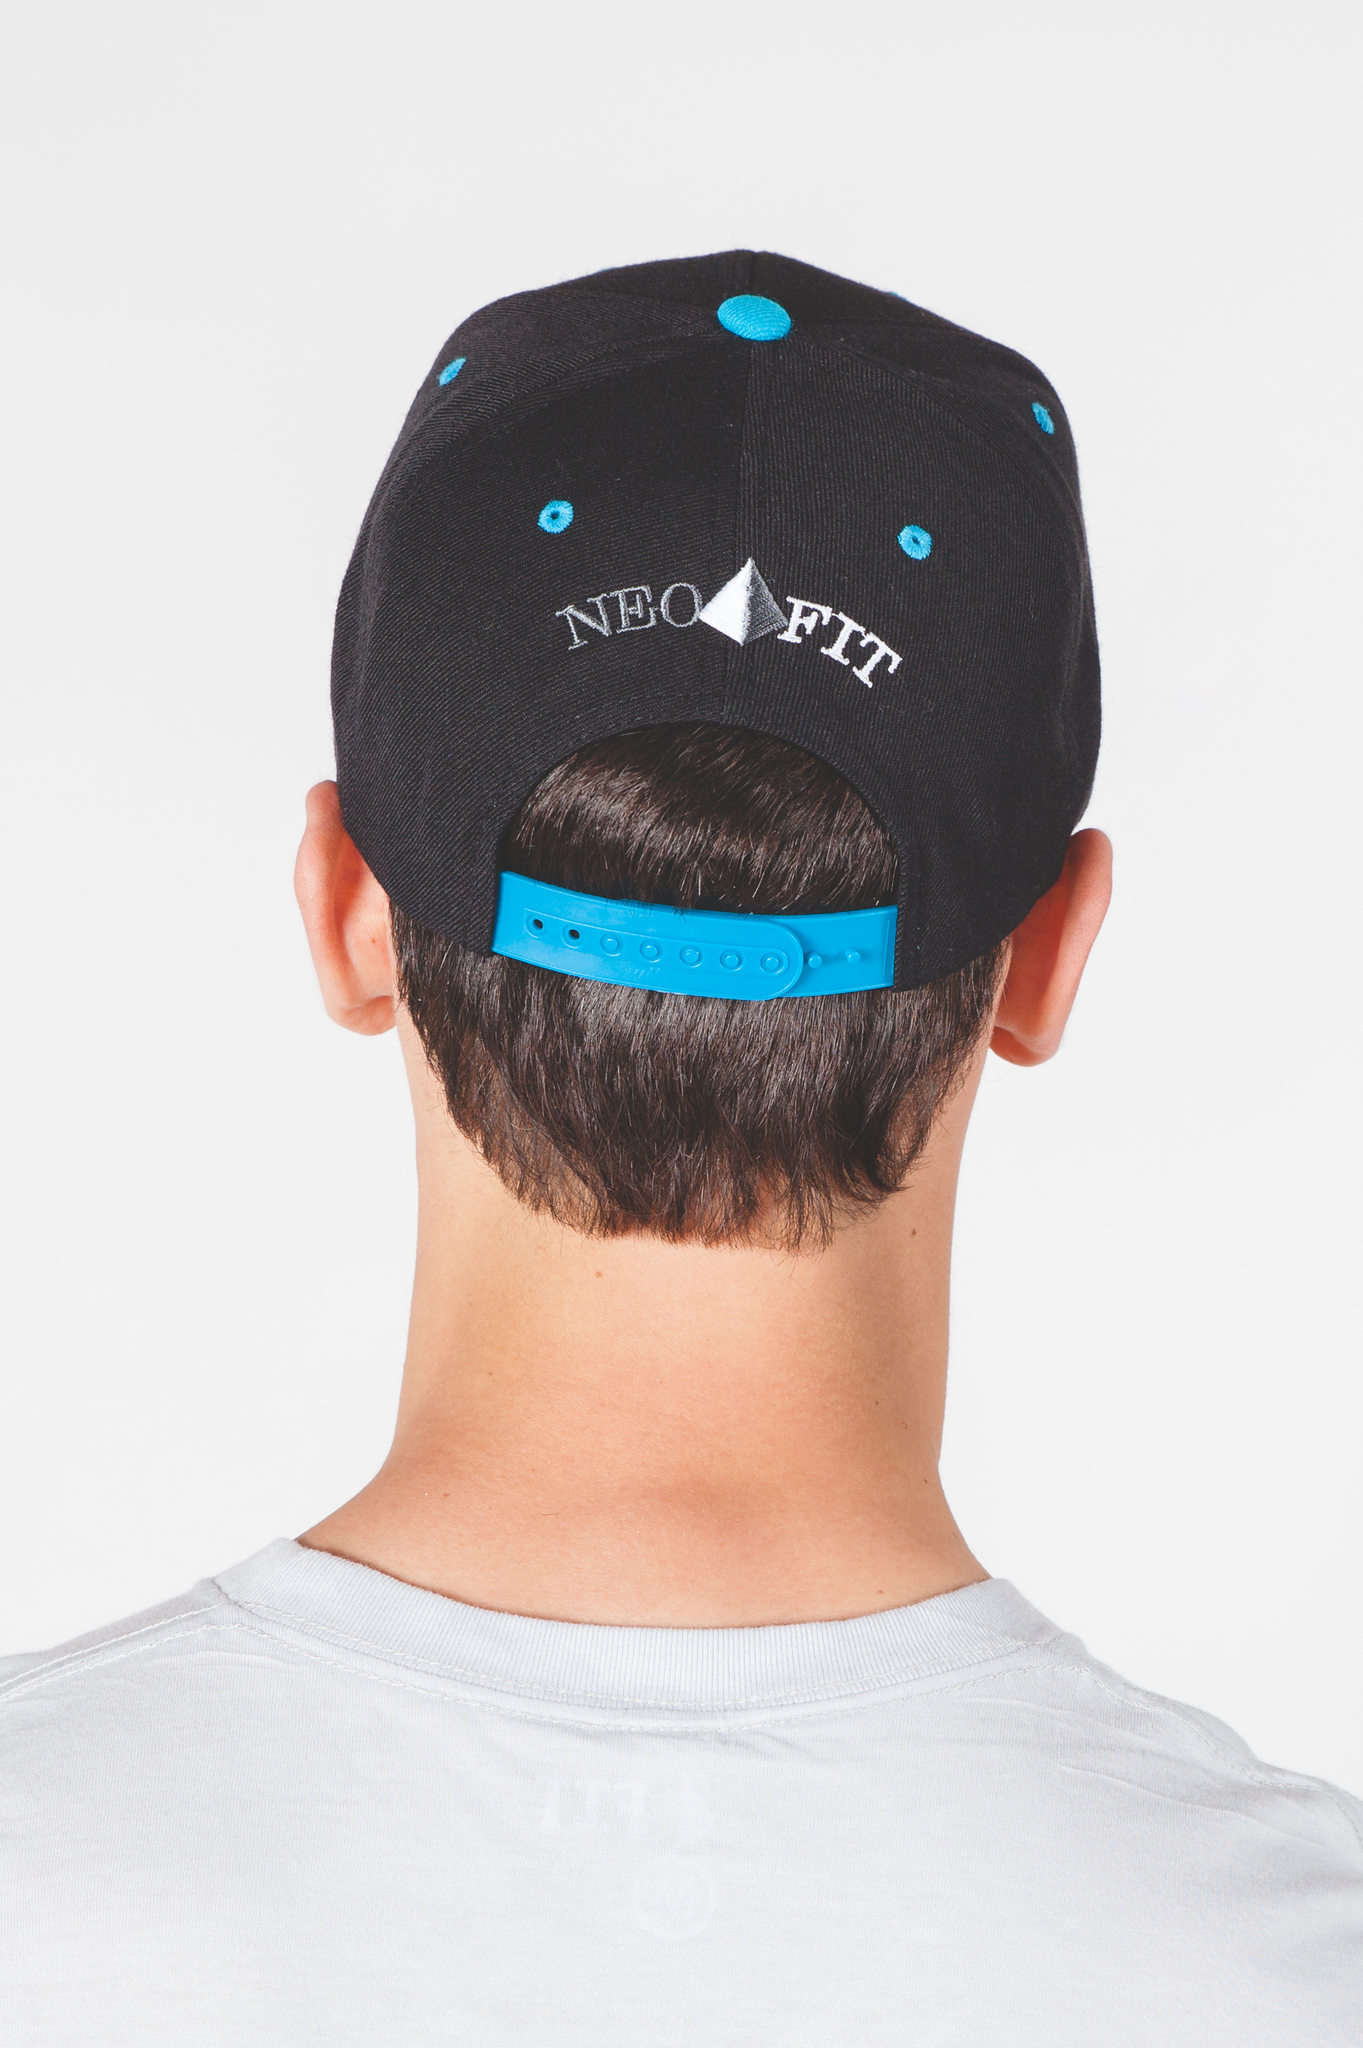 Flat Brim Adjustable Snapback Hat Cap - Black/Aqua for Men & Women –  theNEObrand